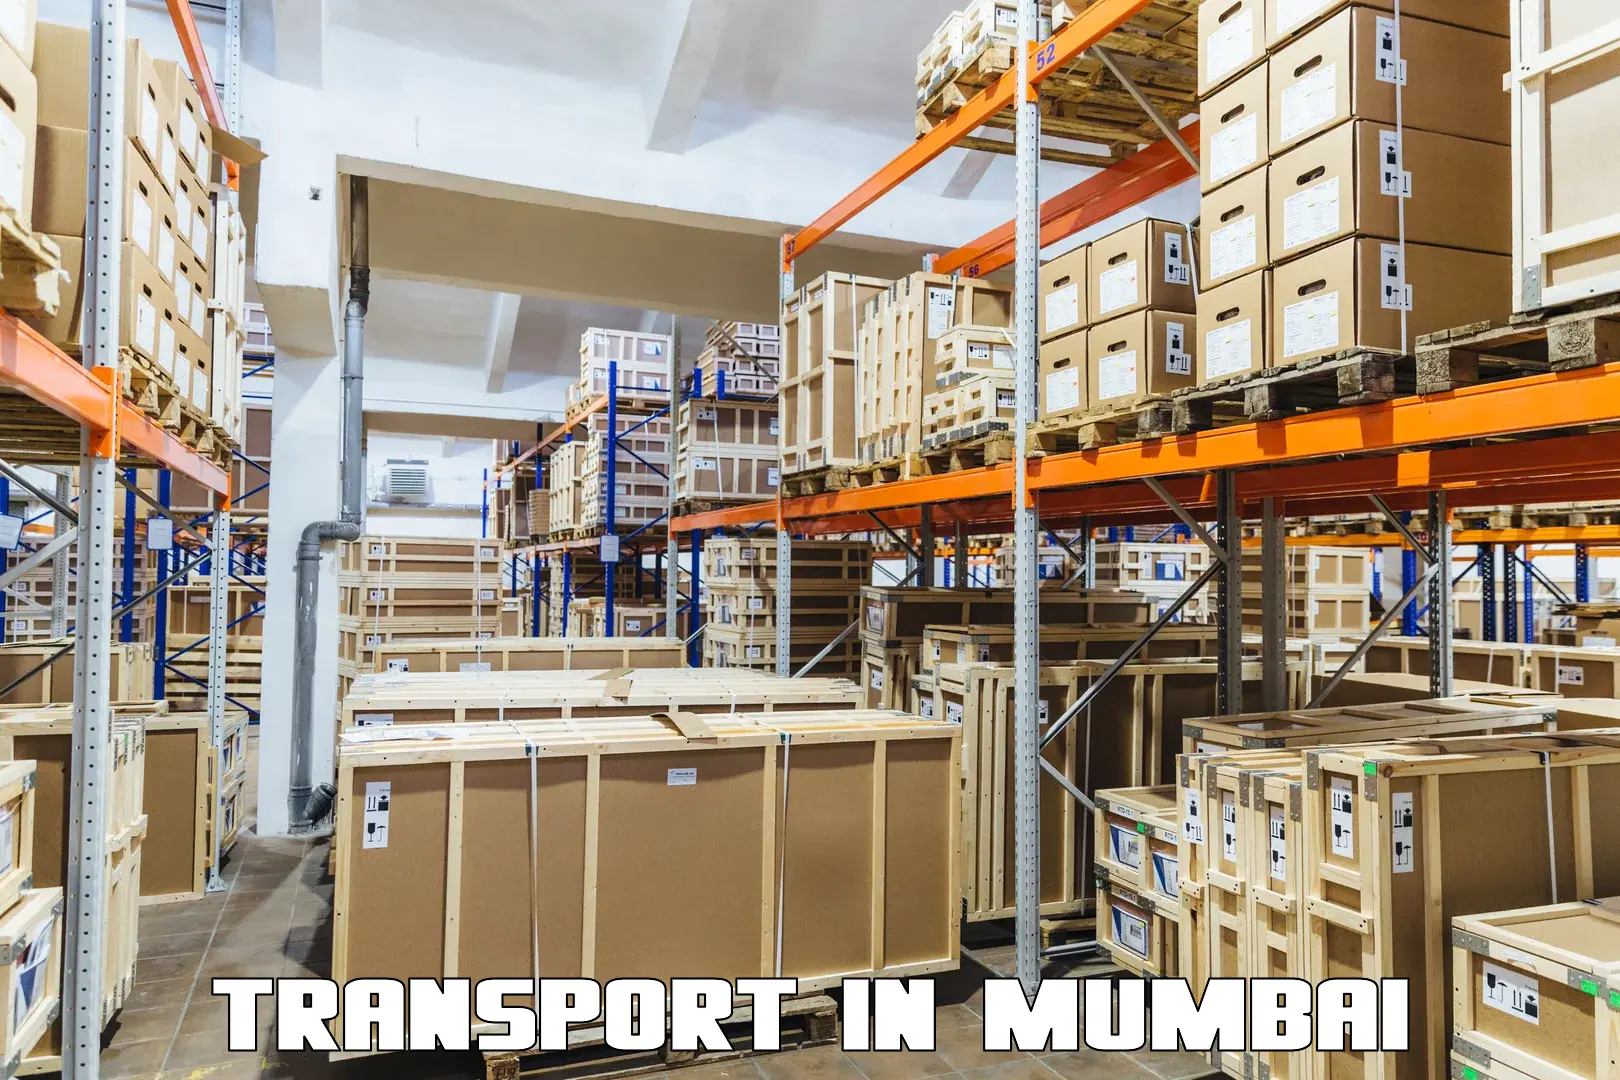 Container transport service in Mumbai